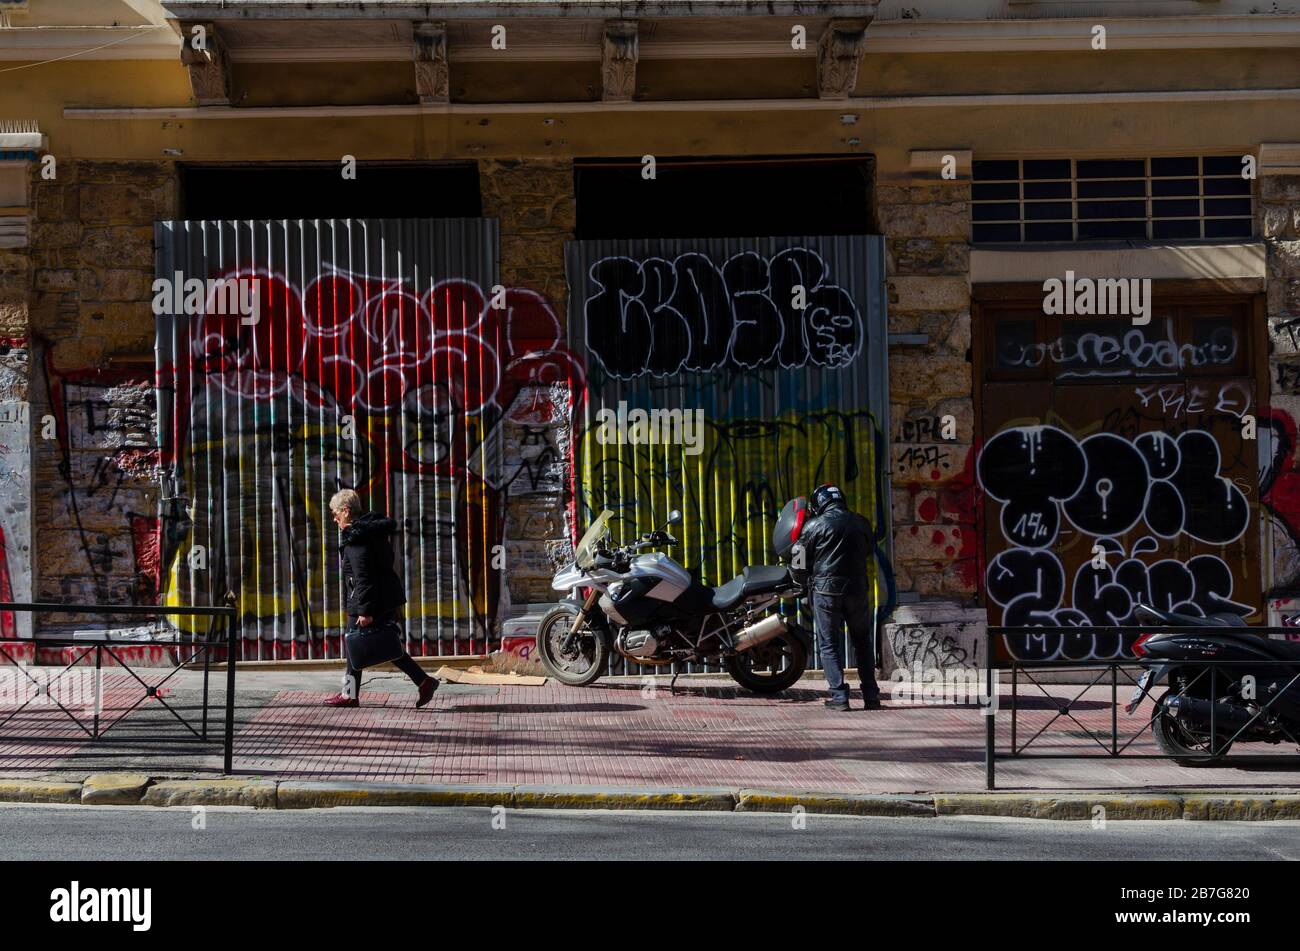 ATHEN, GRIECHENLAND - 03. März 2020 - Menschen in einer belebten Durchgangsstraße im Zentrum Athens Griechenland Stockfoto